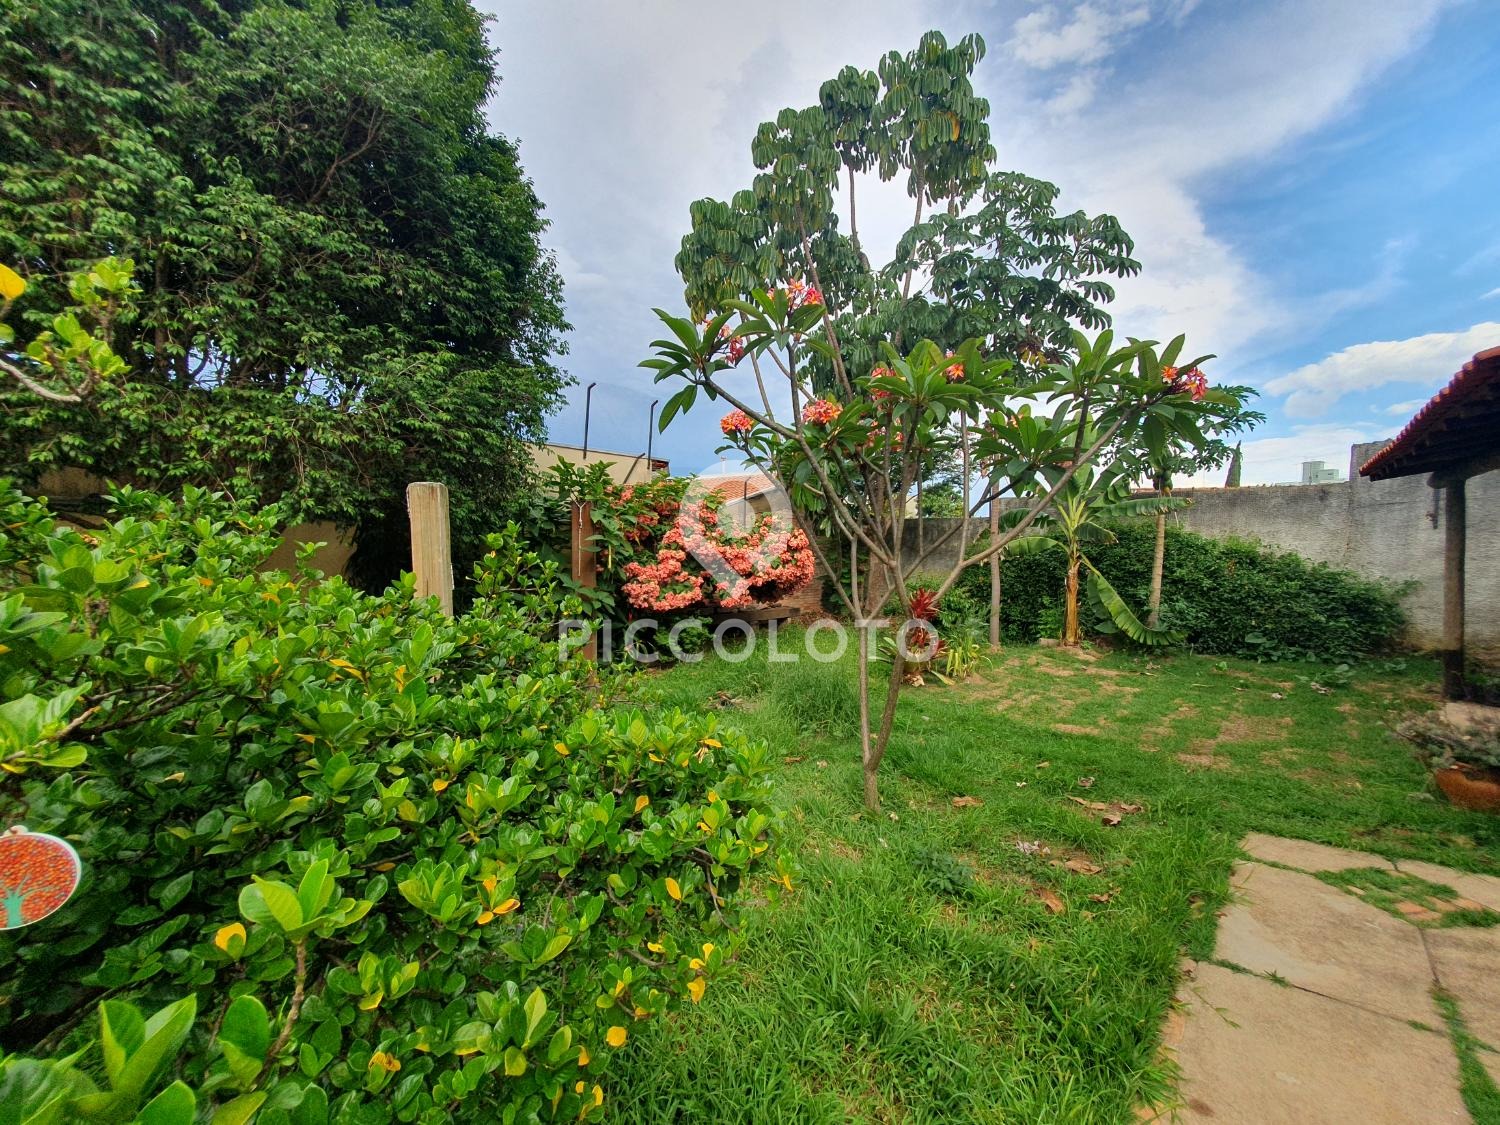 Piccoloto -Casa à venda no Jardim Primavera em Campinas